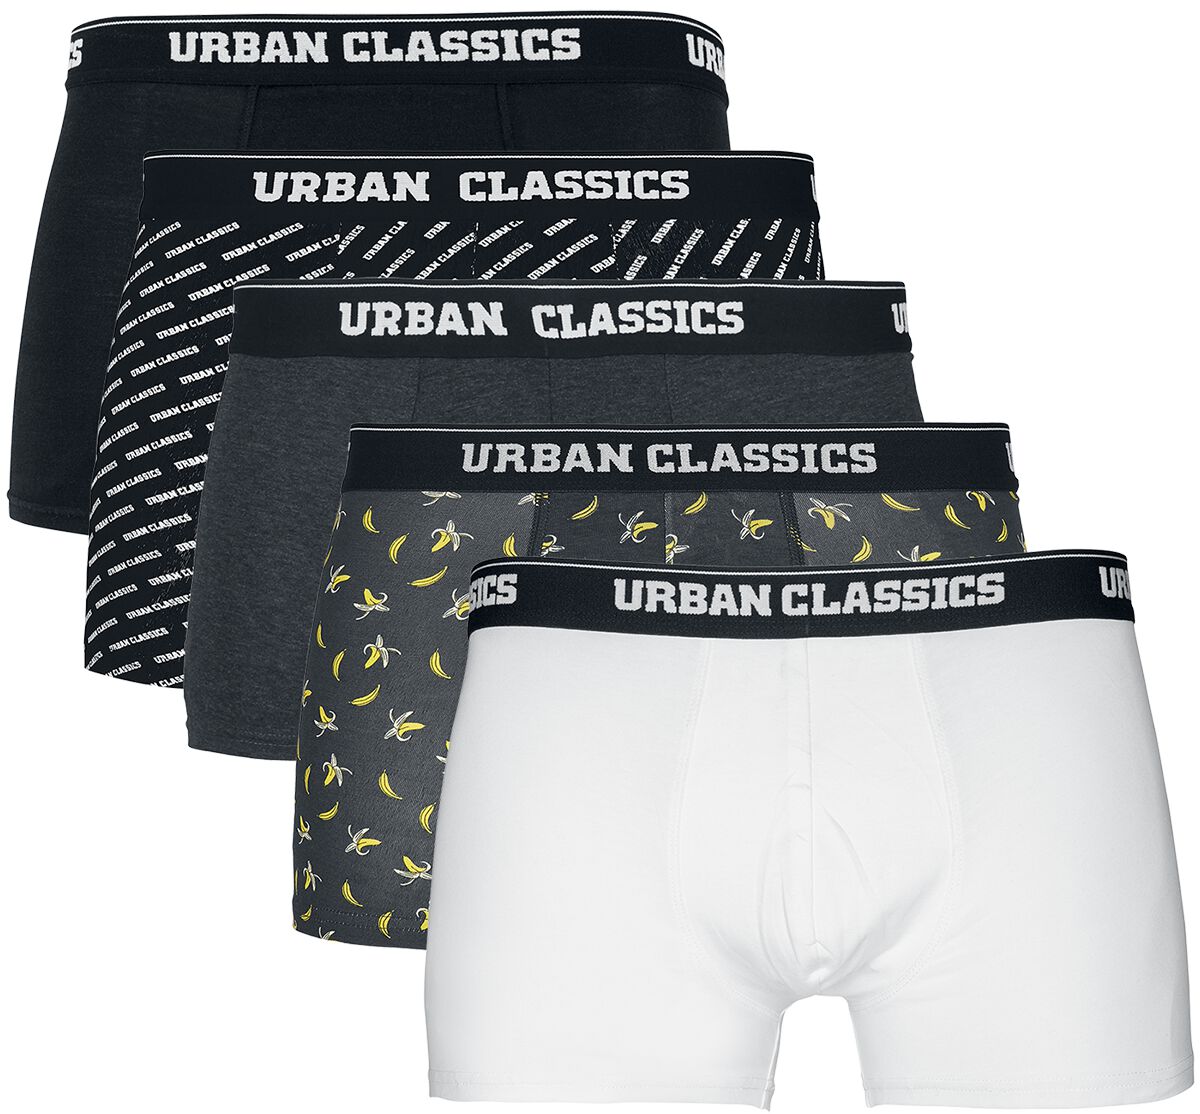 Urban Classics Boxershort-Set - Boxer Shorts 5-Pack - S bis XXL - für Männer - Größe S - schwarz/grau/weiß